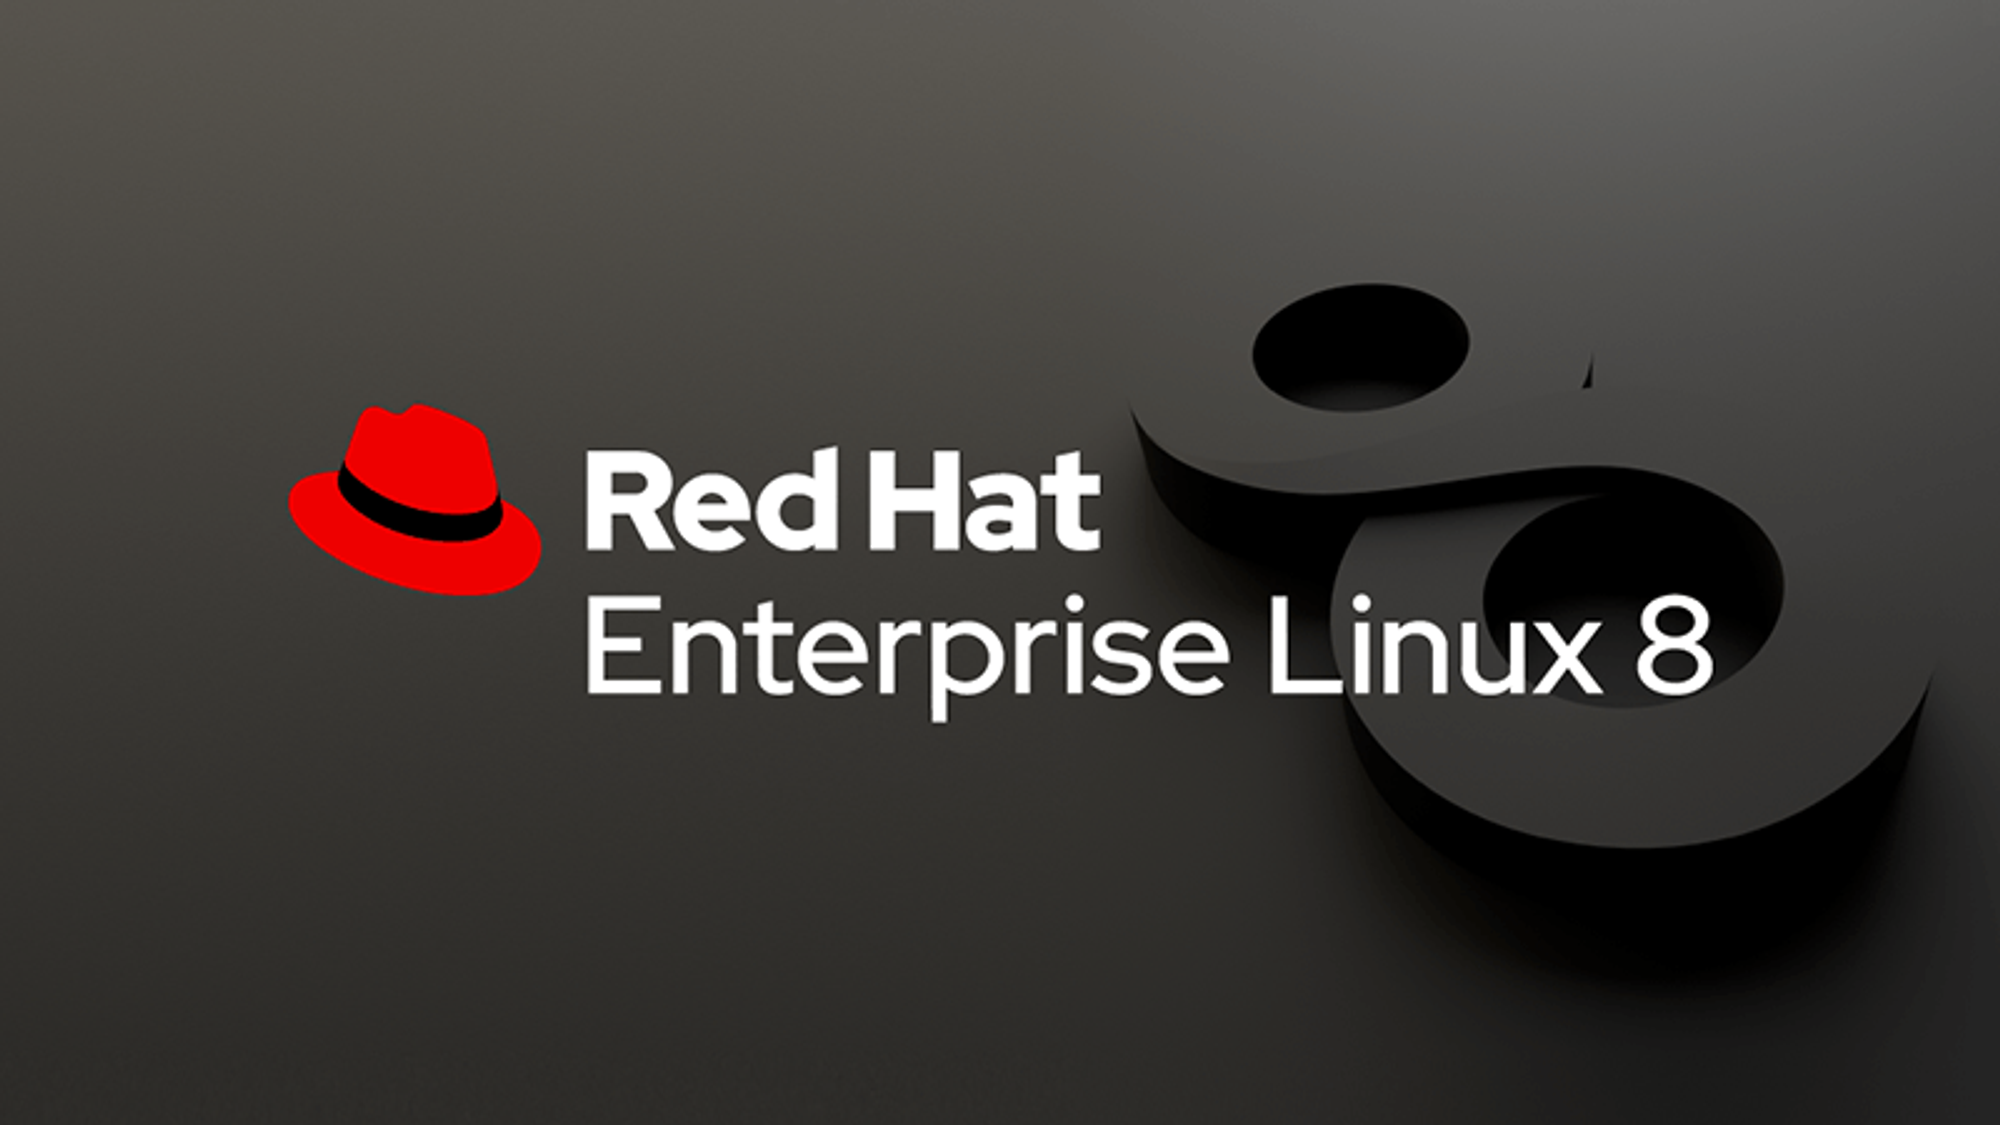 Red hat 8. Red hat Enterprise Linux. RHEL 8. Red hat Enterprise Linux 8. RHEL Linux.